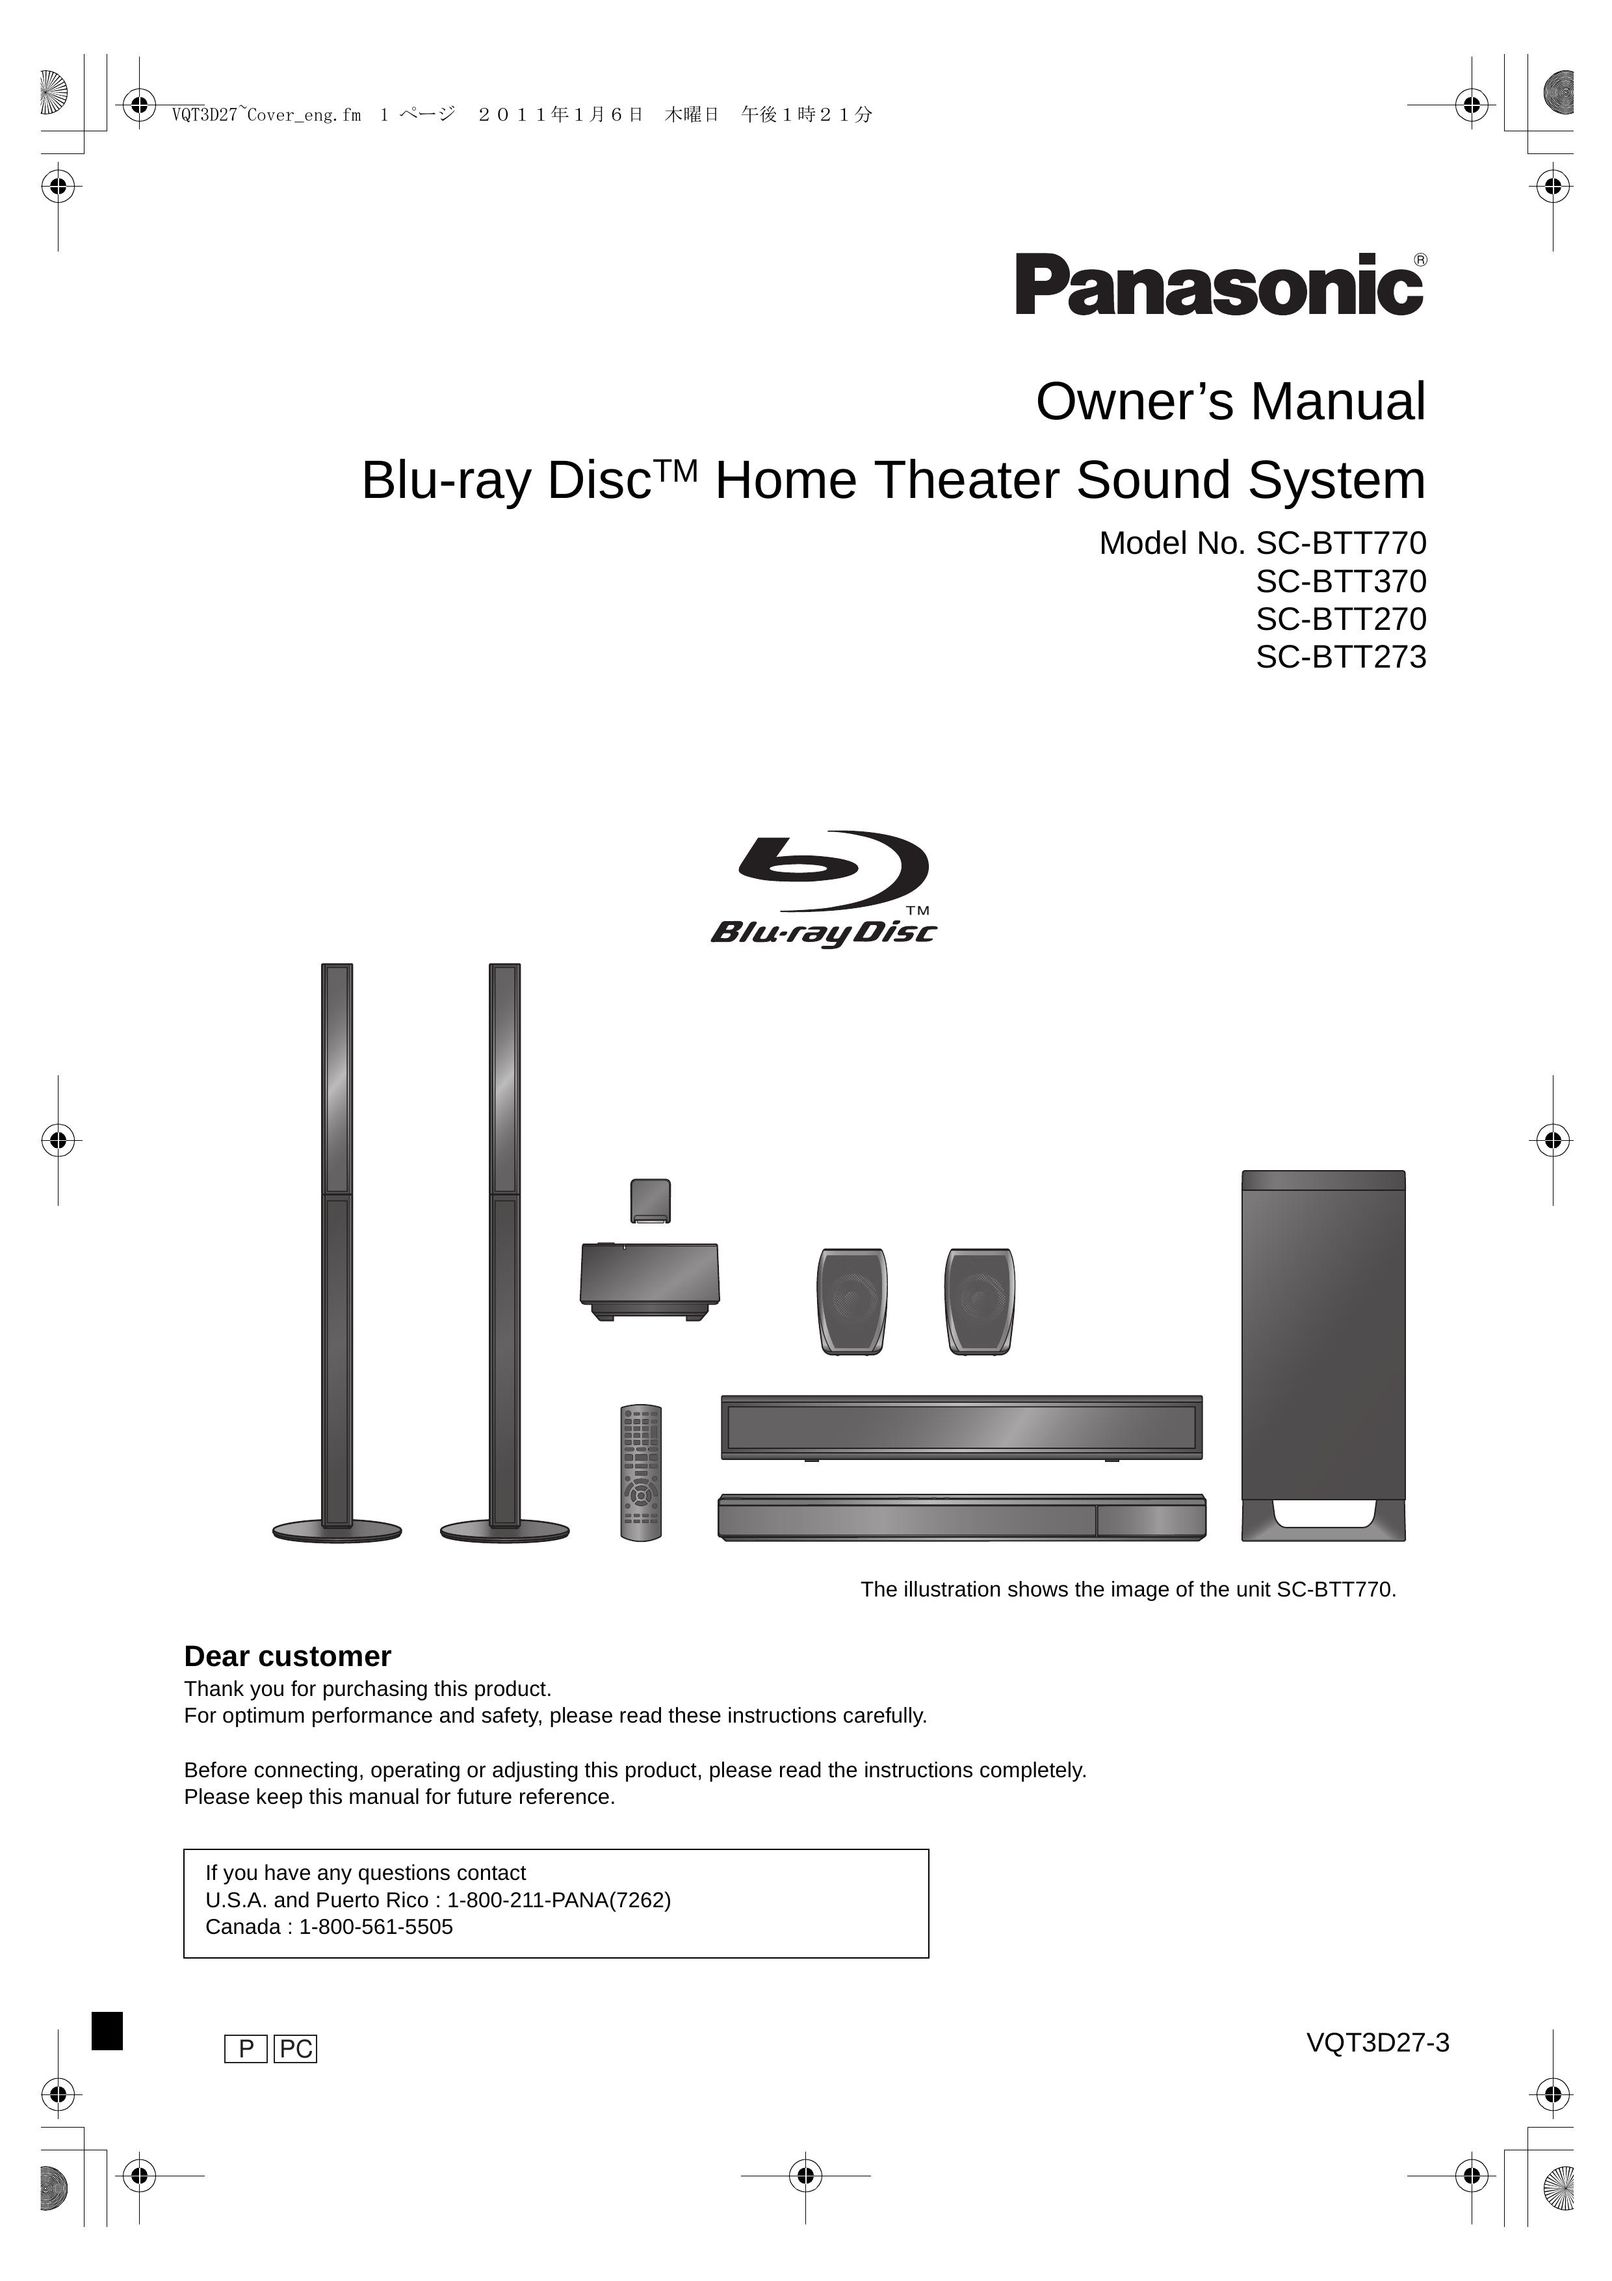 Panasonic BTT273 Stereo System User Manual